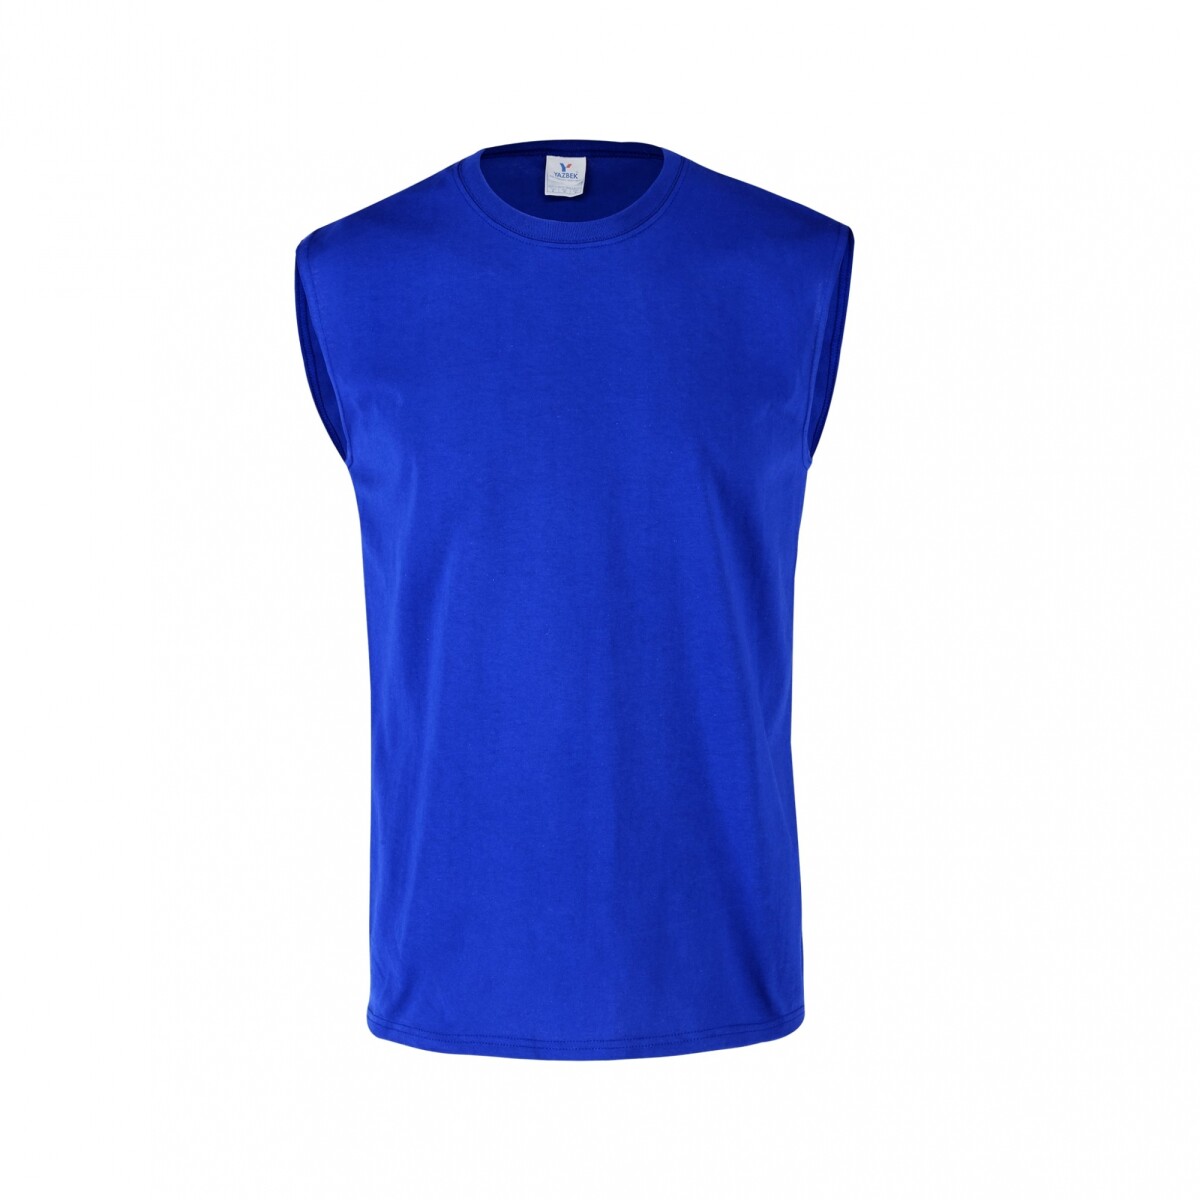 Camiseta a la base sin mangas - Azul royal 